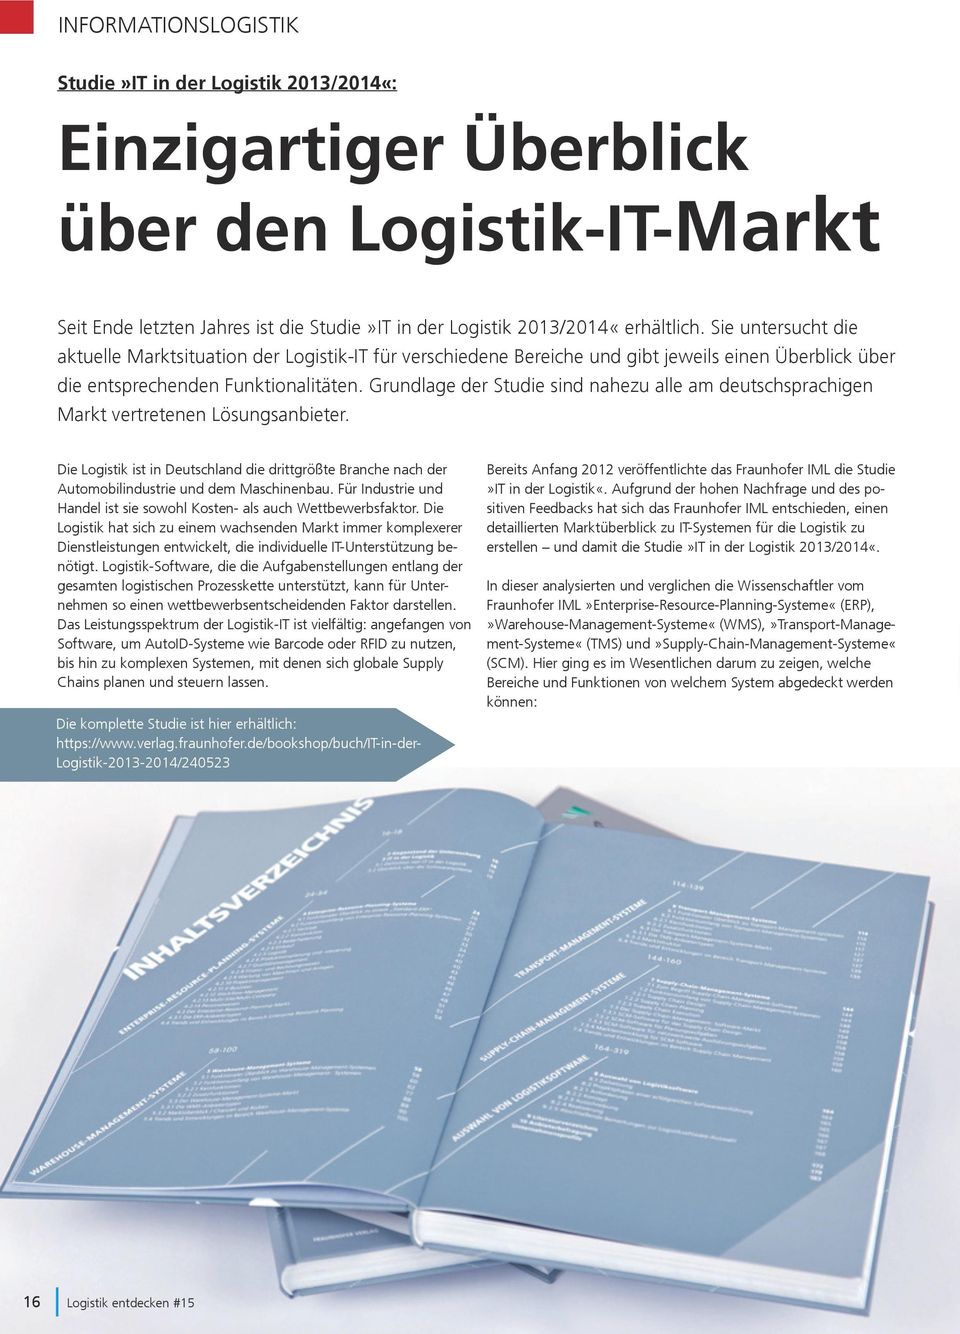 Grundlage der Studie sind nahezu alle am deutschsprachigen Markt vertretenen Lösungsanbieter. Die Logistik ist in Deutschland die drittgrößte Branche nach der Automobilindustrie und dem Maschinenbau.